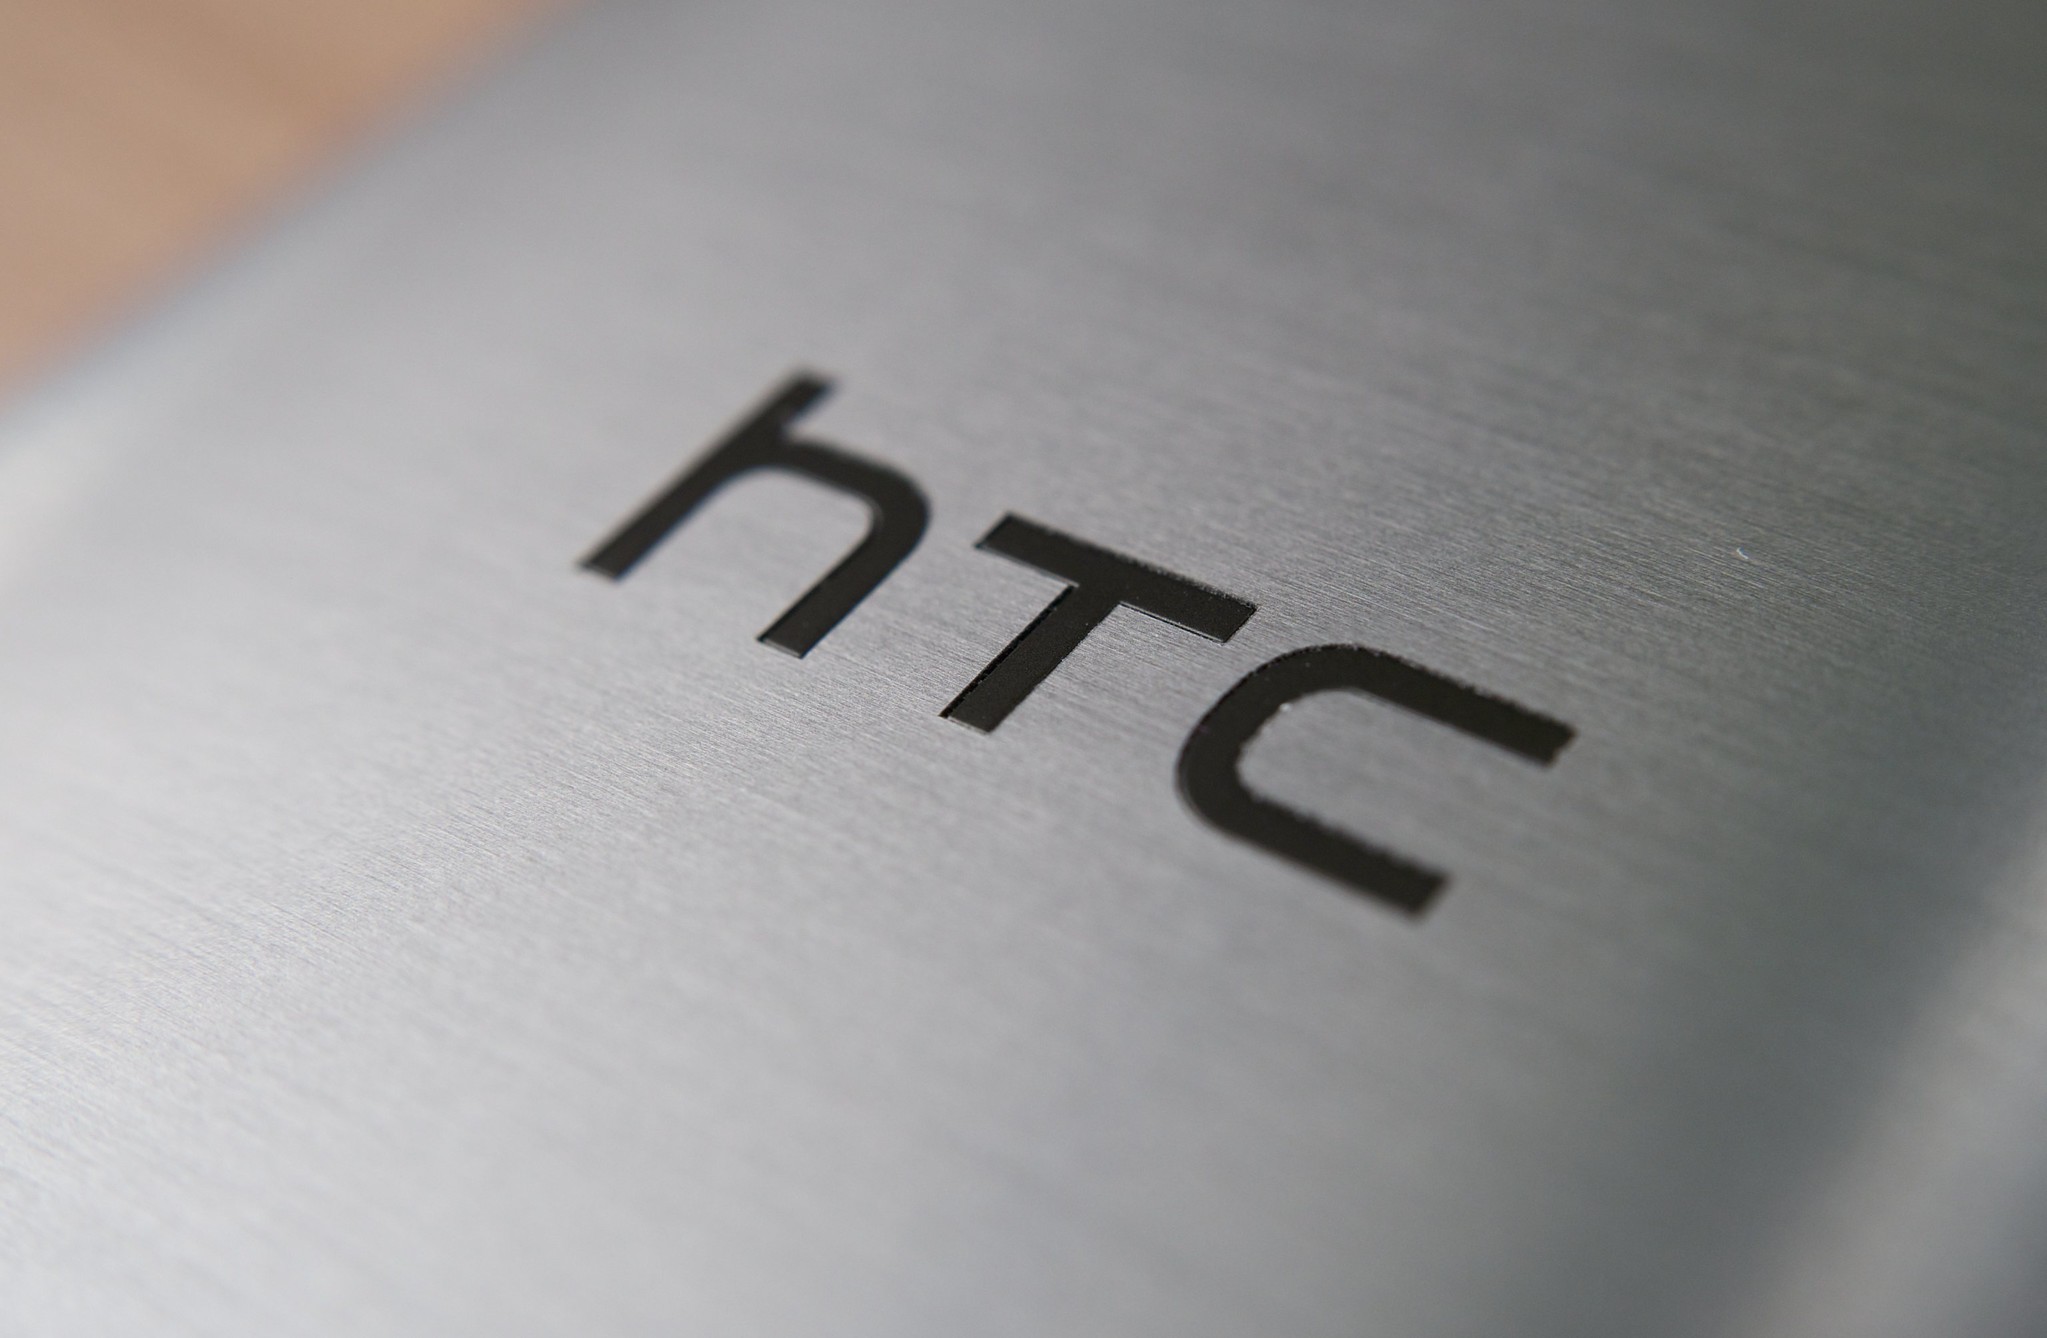 Επανεξέταση του HTC Wildfire R70 smartphone με κύρια χαρακτηριστικά